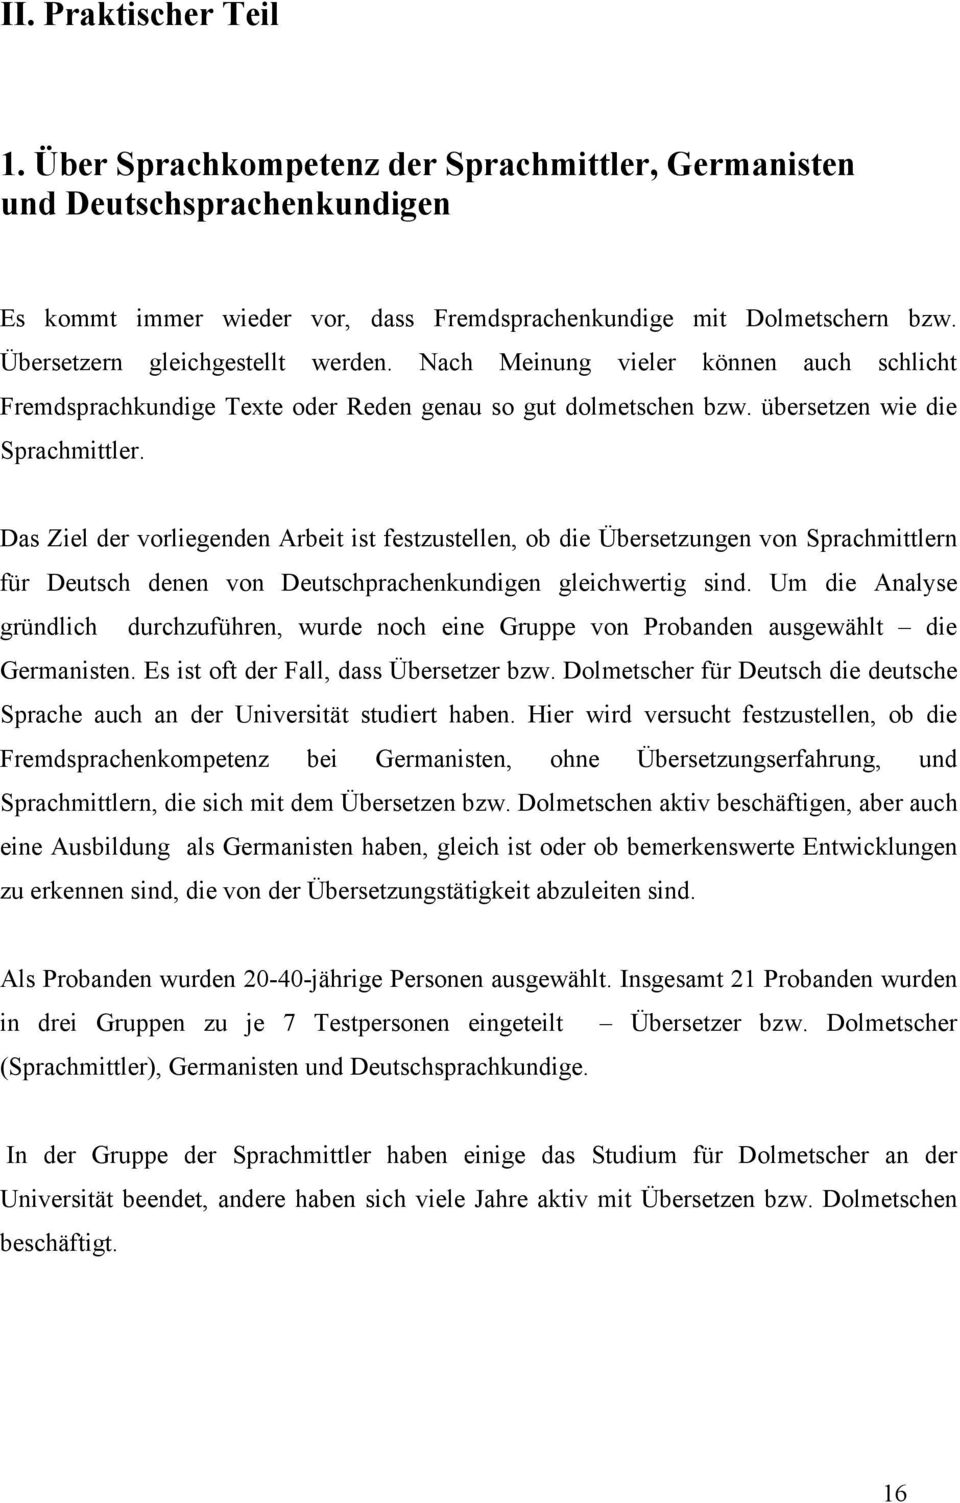 Das Ziel der vorliegenden Arbeit ist festzustellen, ob die Übersetzungen von Sprachmittlern für Deutsch denen von Deutschprachenkundigen gleichwertig sind.